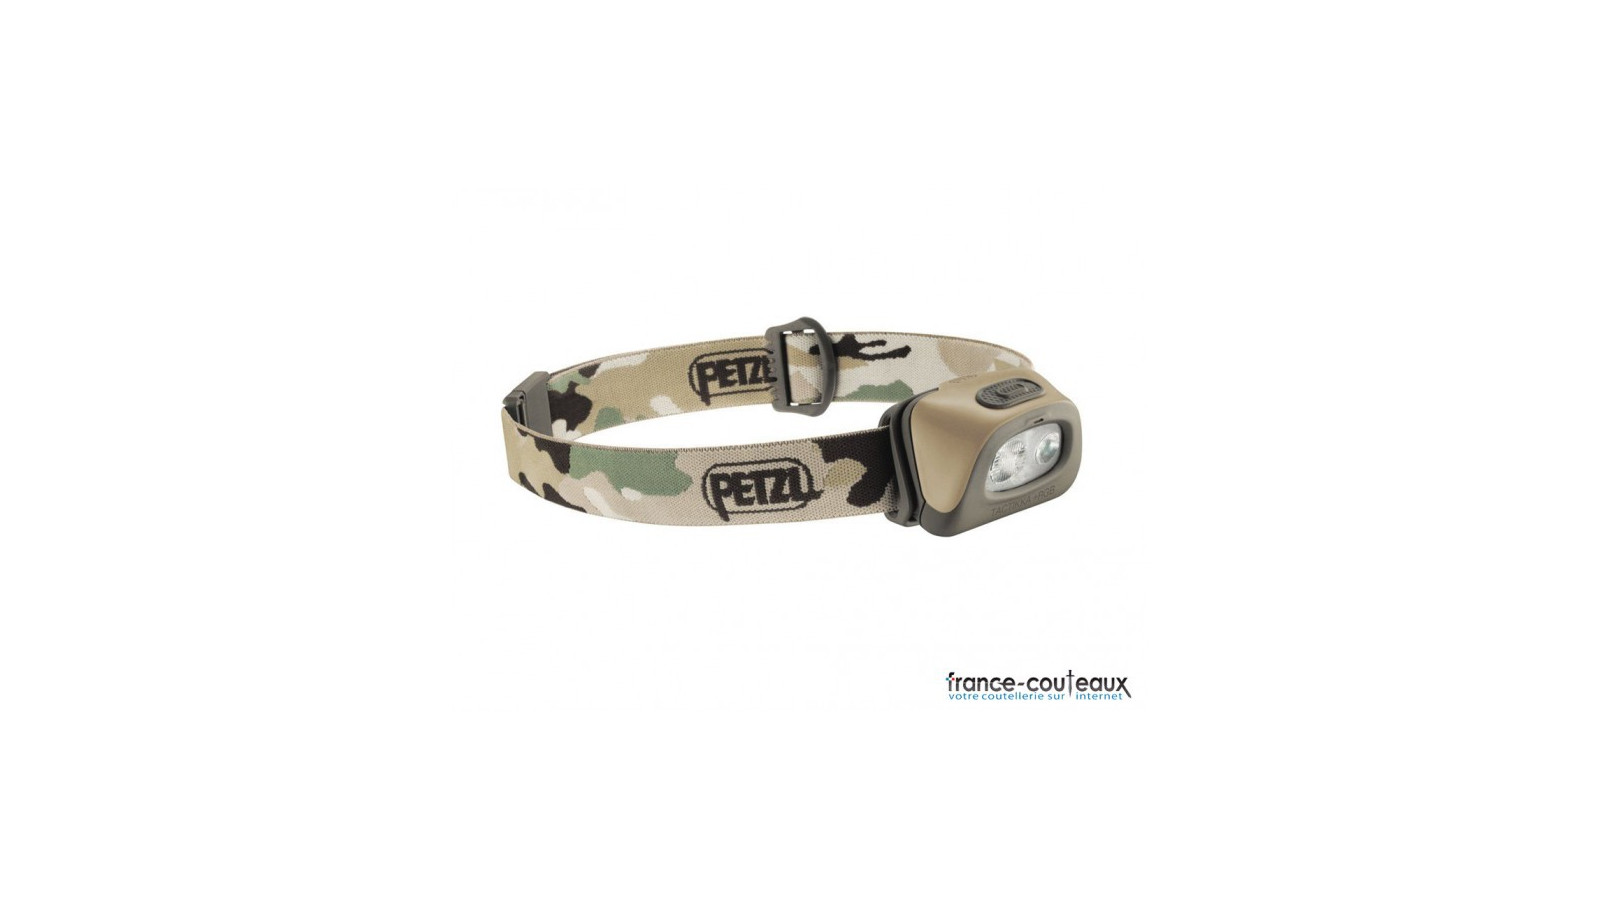 Lampe frontale compacte à LED Petzl Tactikka+ 160 lumens RGB